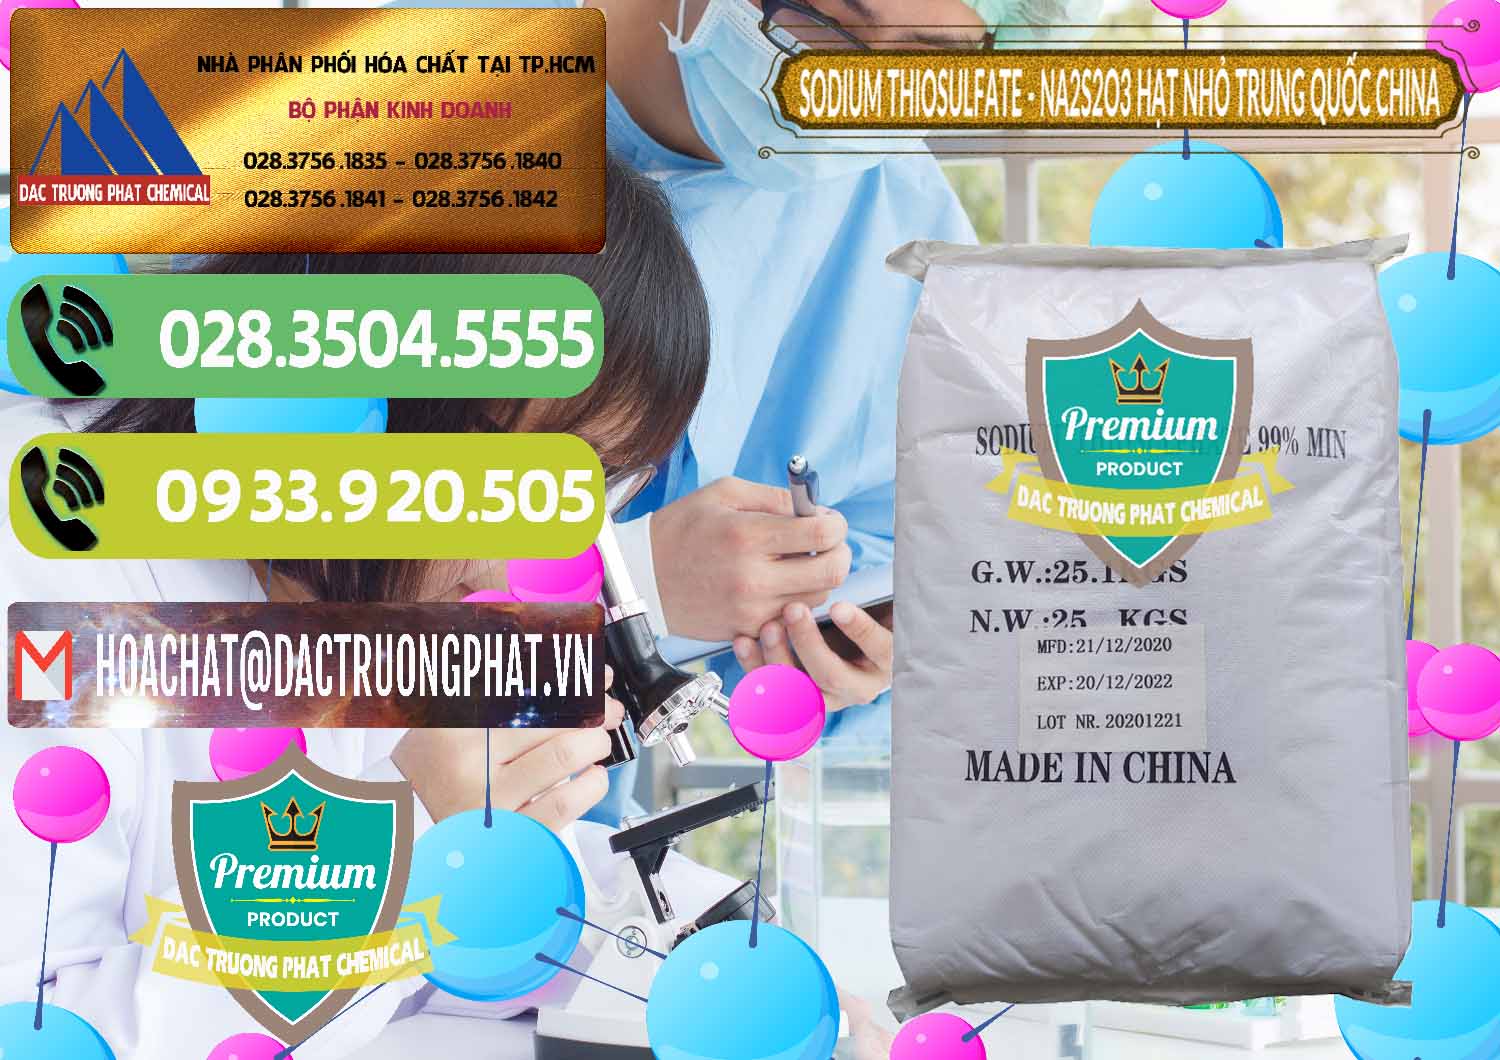 Cty chuyên bán - phân phối Sodium Thiosulfate - NA2S2O3 Hạt Nhỏ Trung Quốc China - 0204 - Công ty chuyên nhập khẩu - cung cấp hóa chất tại TP.HCM - hoachatmientay.vn